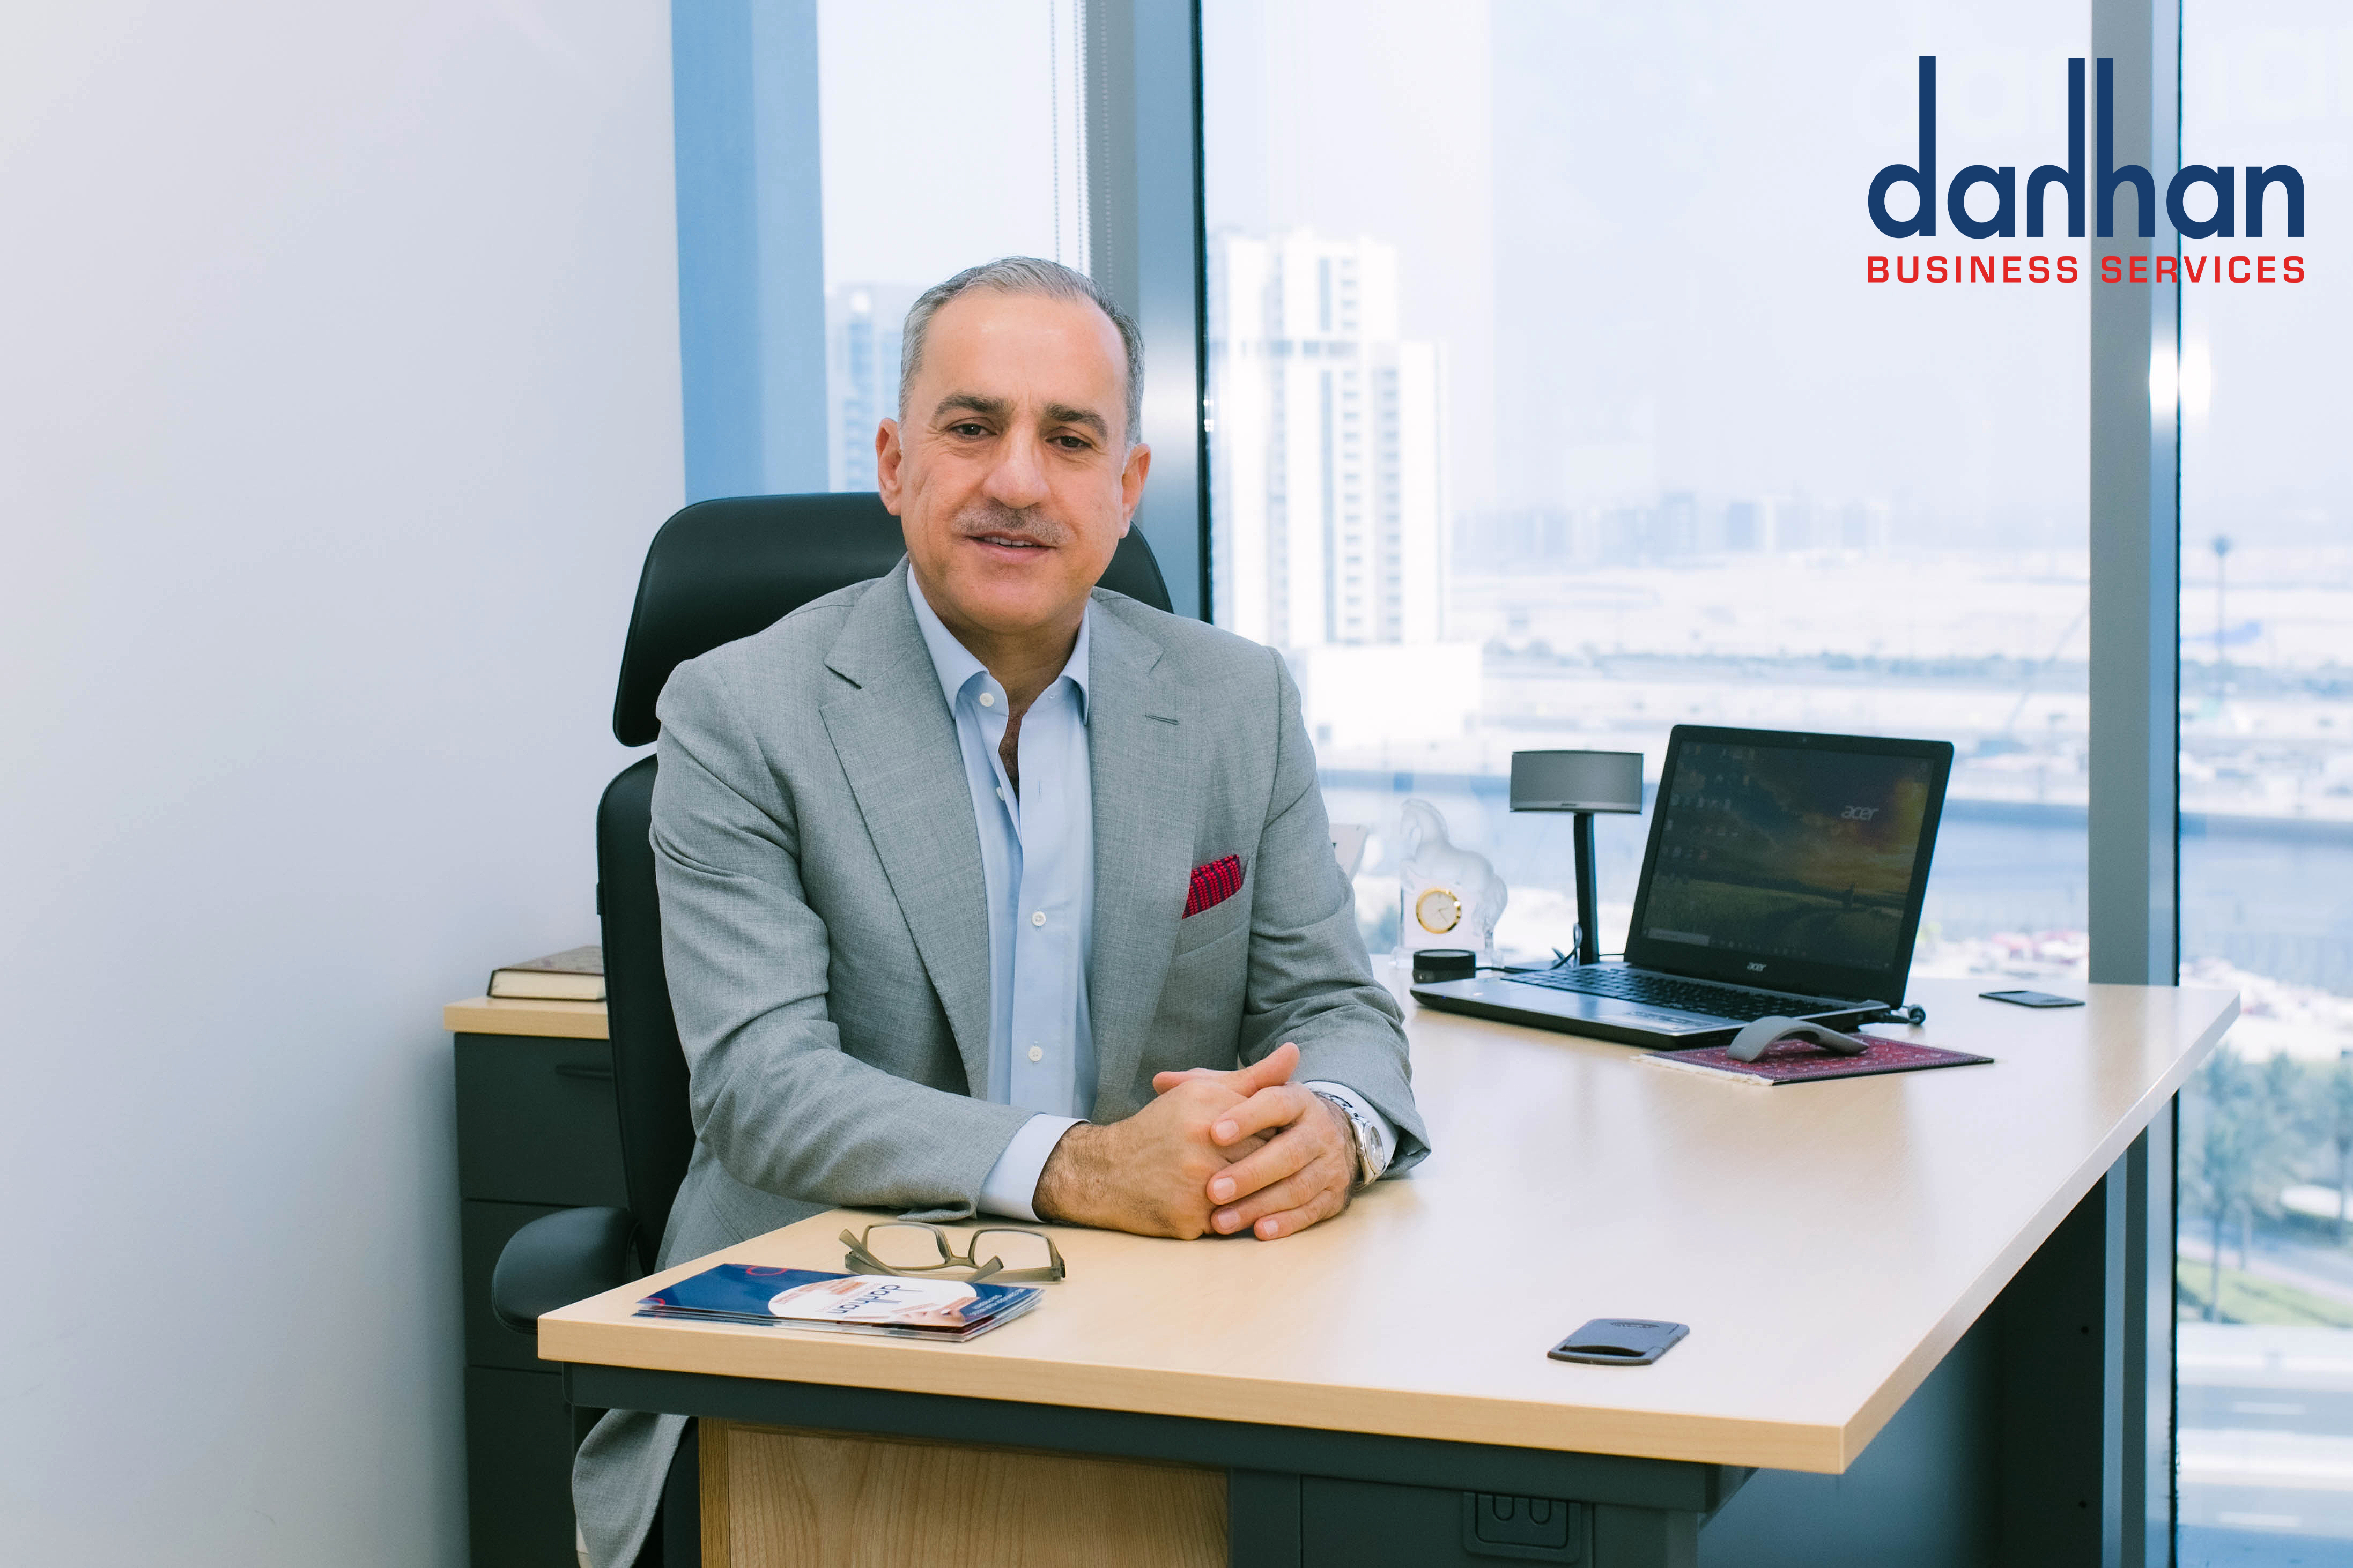 Dahhan Business Services